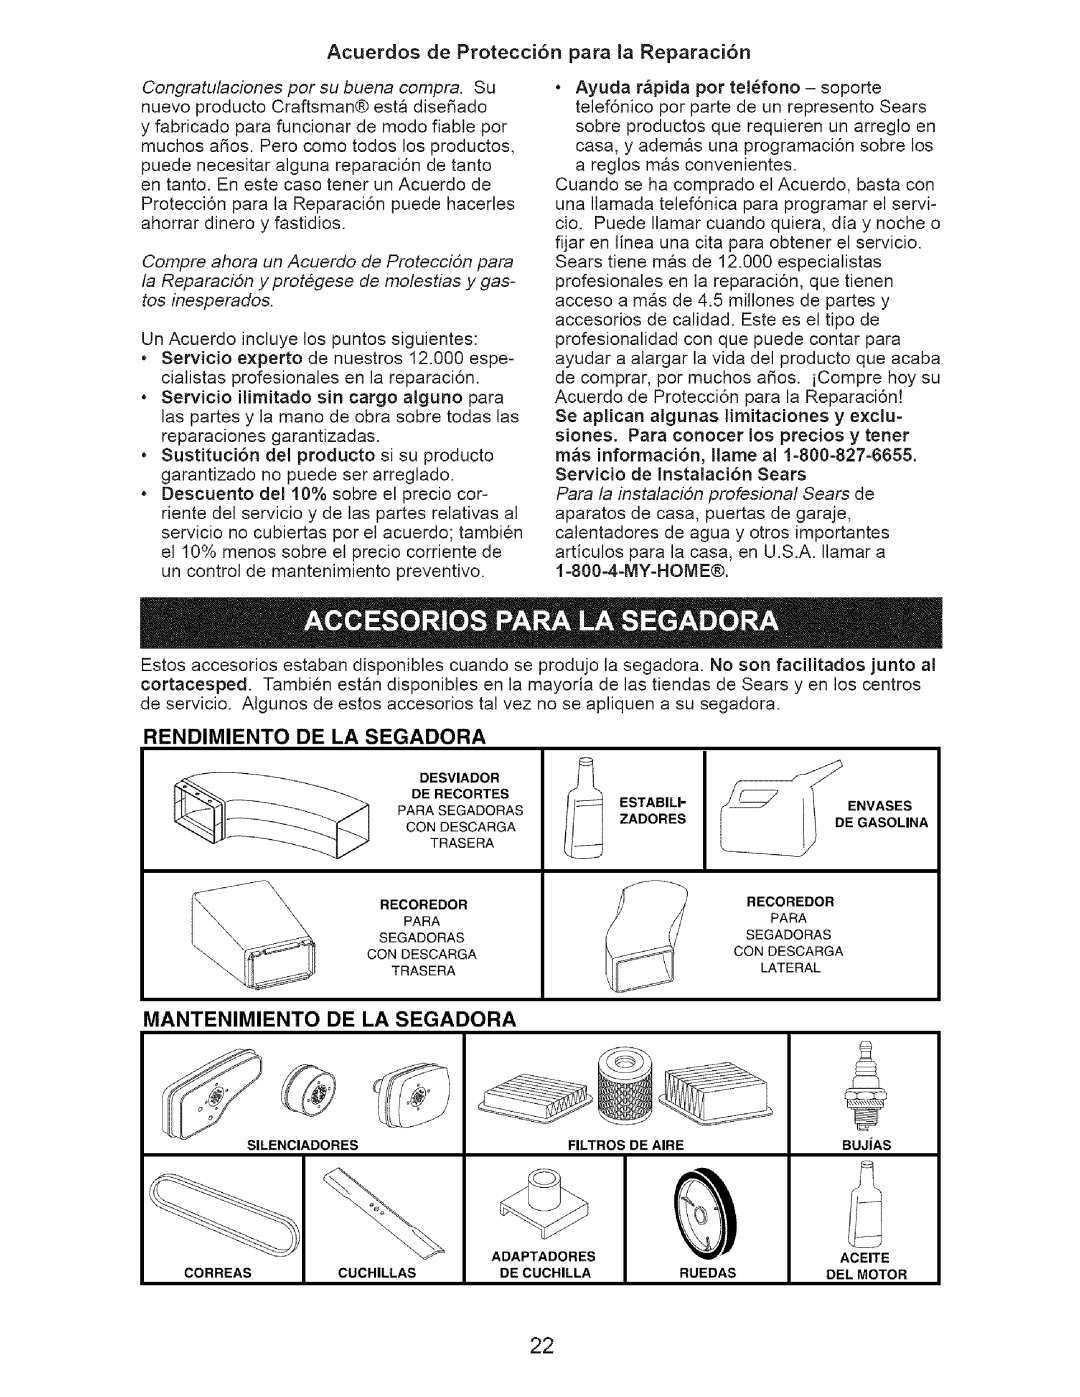 Craftsman 917.375631 owner manual Rendimiento De La Segadora, Mantenimiento De La Segadora 